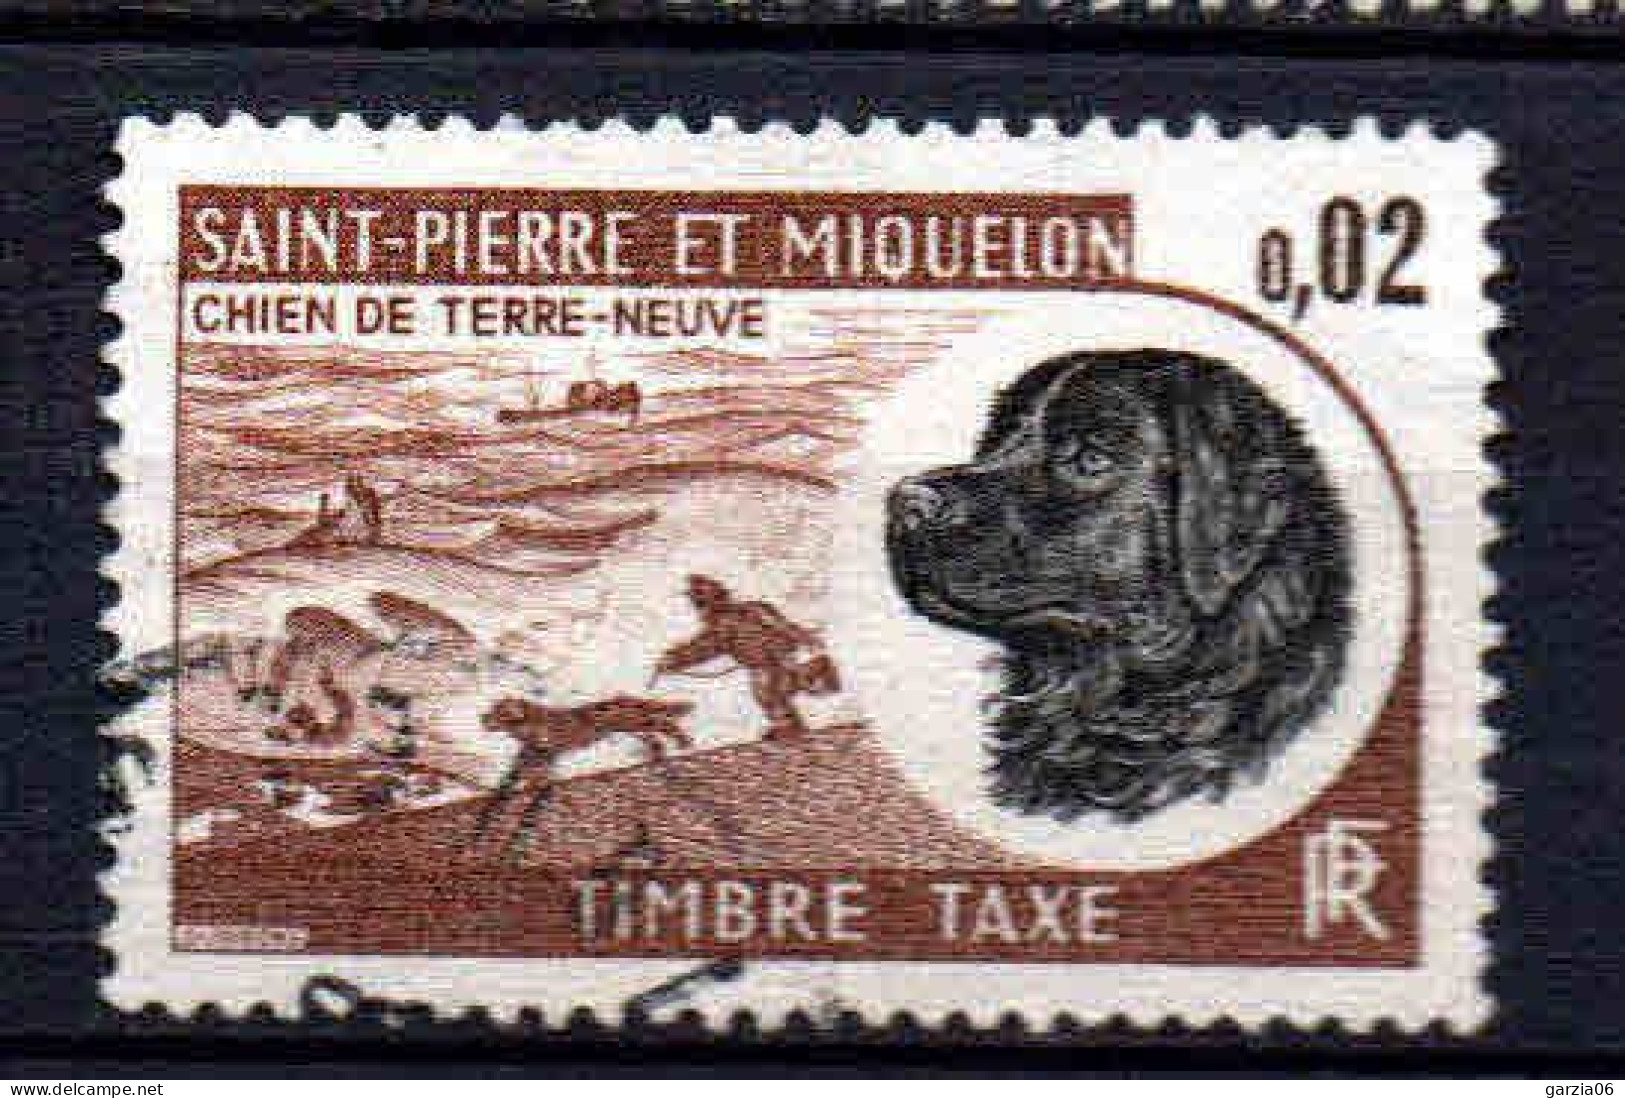 St Pierre Et Miquelon    - 1973 -  Chien De Terre Neuve - Tb Taxe  -  N° 77  - Oblit - Used - Postage Due